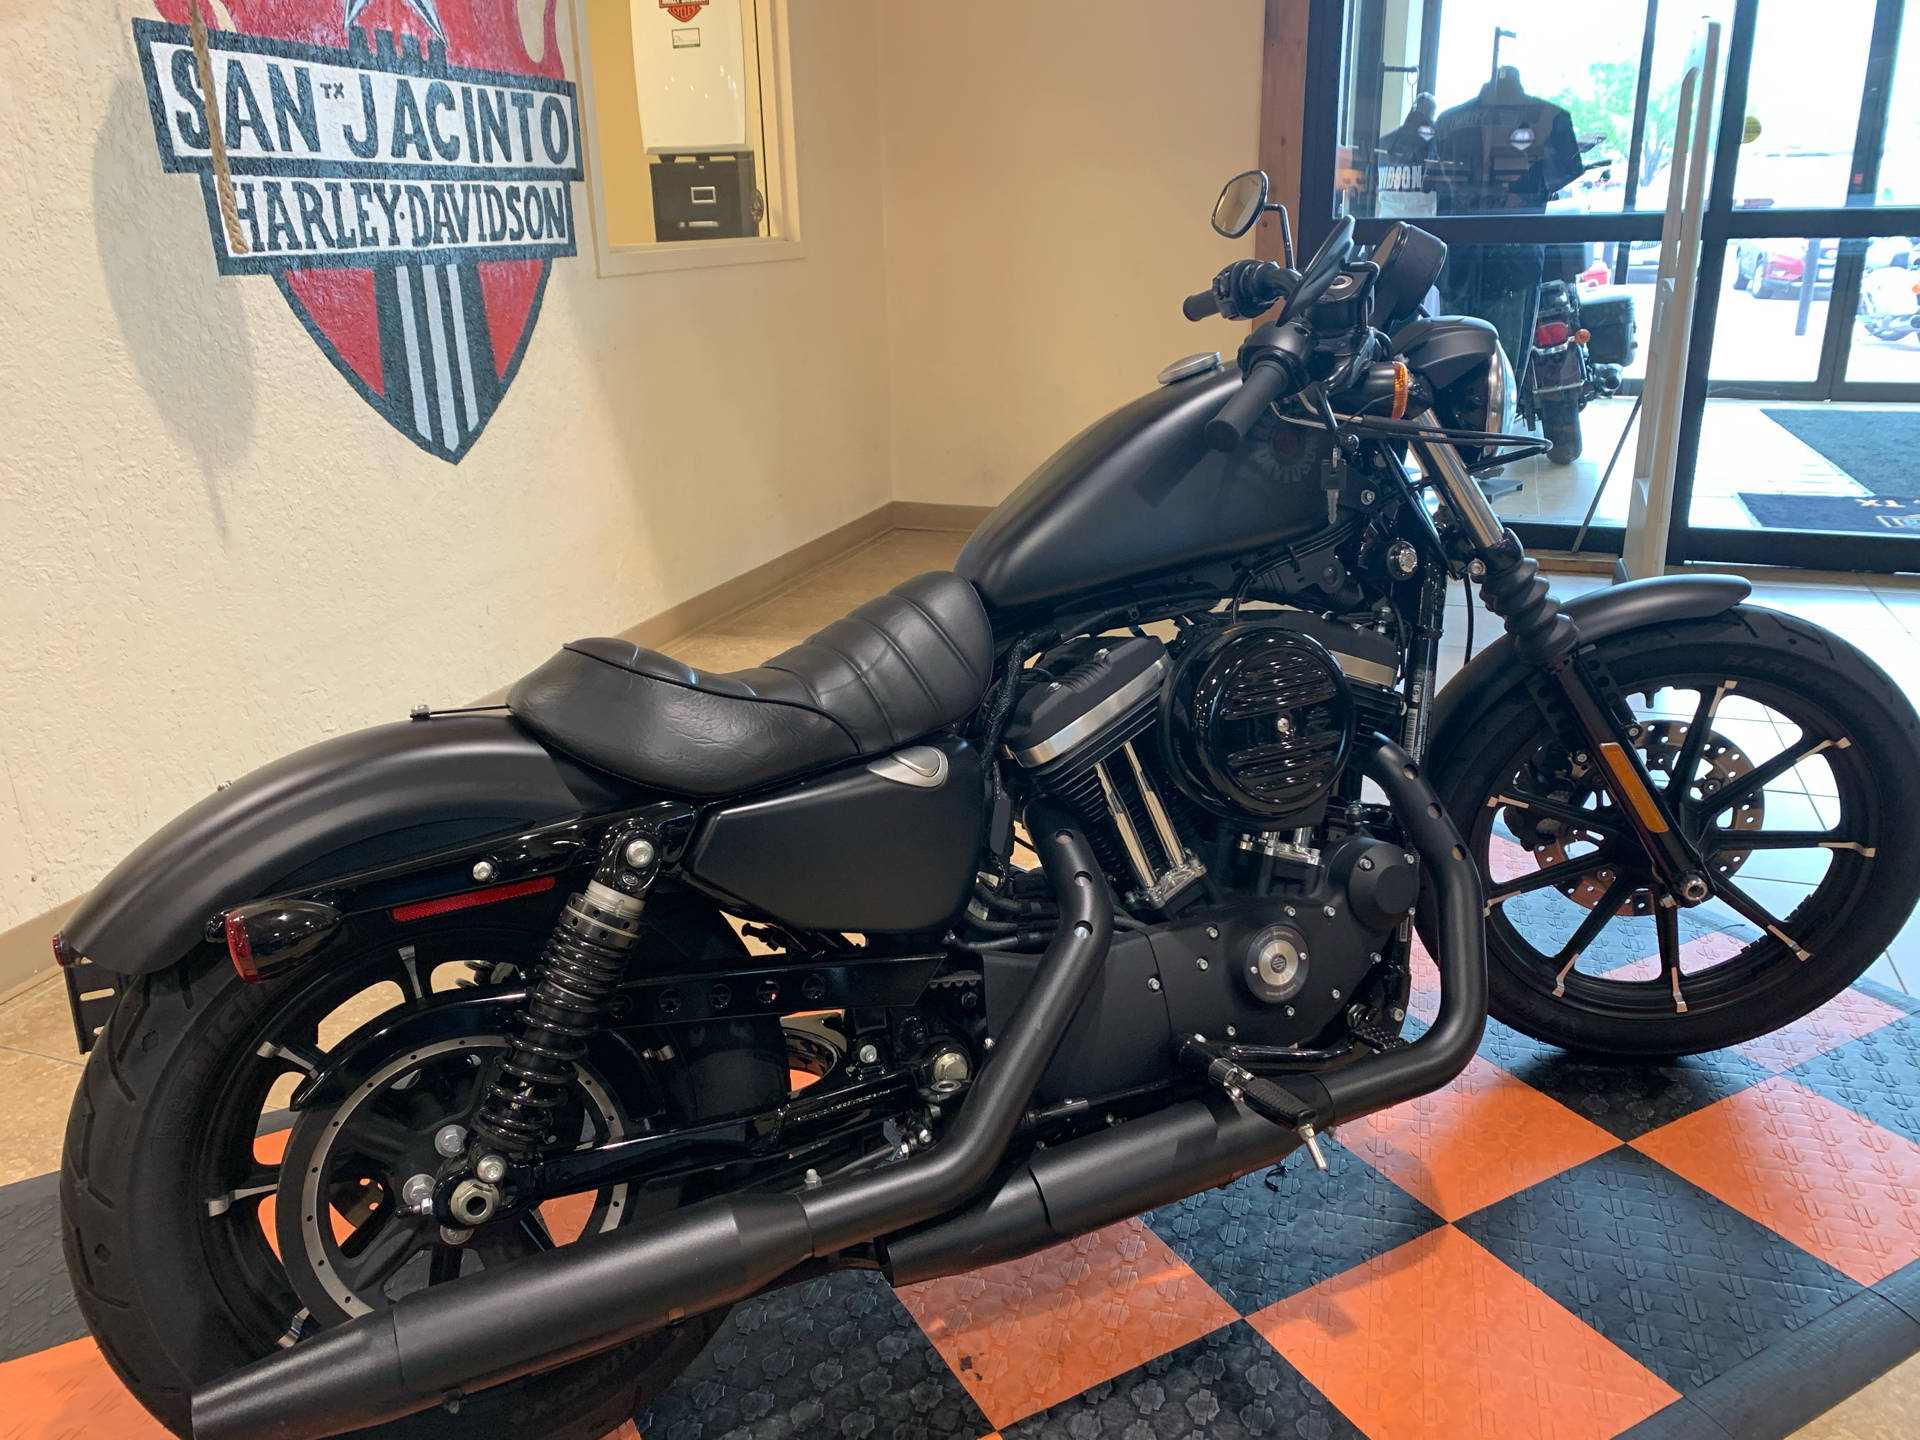 Used 2020 Harley Davidson Iron 883 Motorcycles In Pasadena Tx 436891 Black Denim